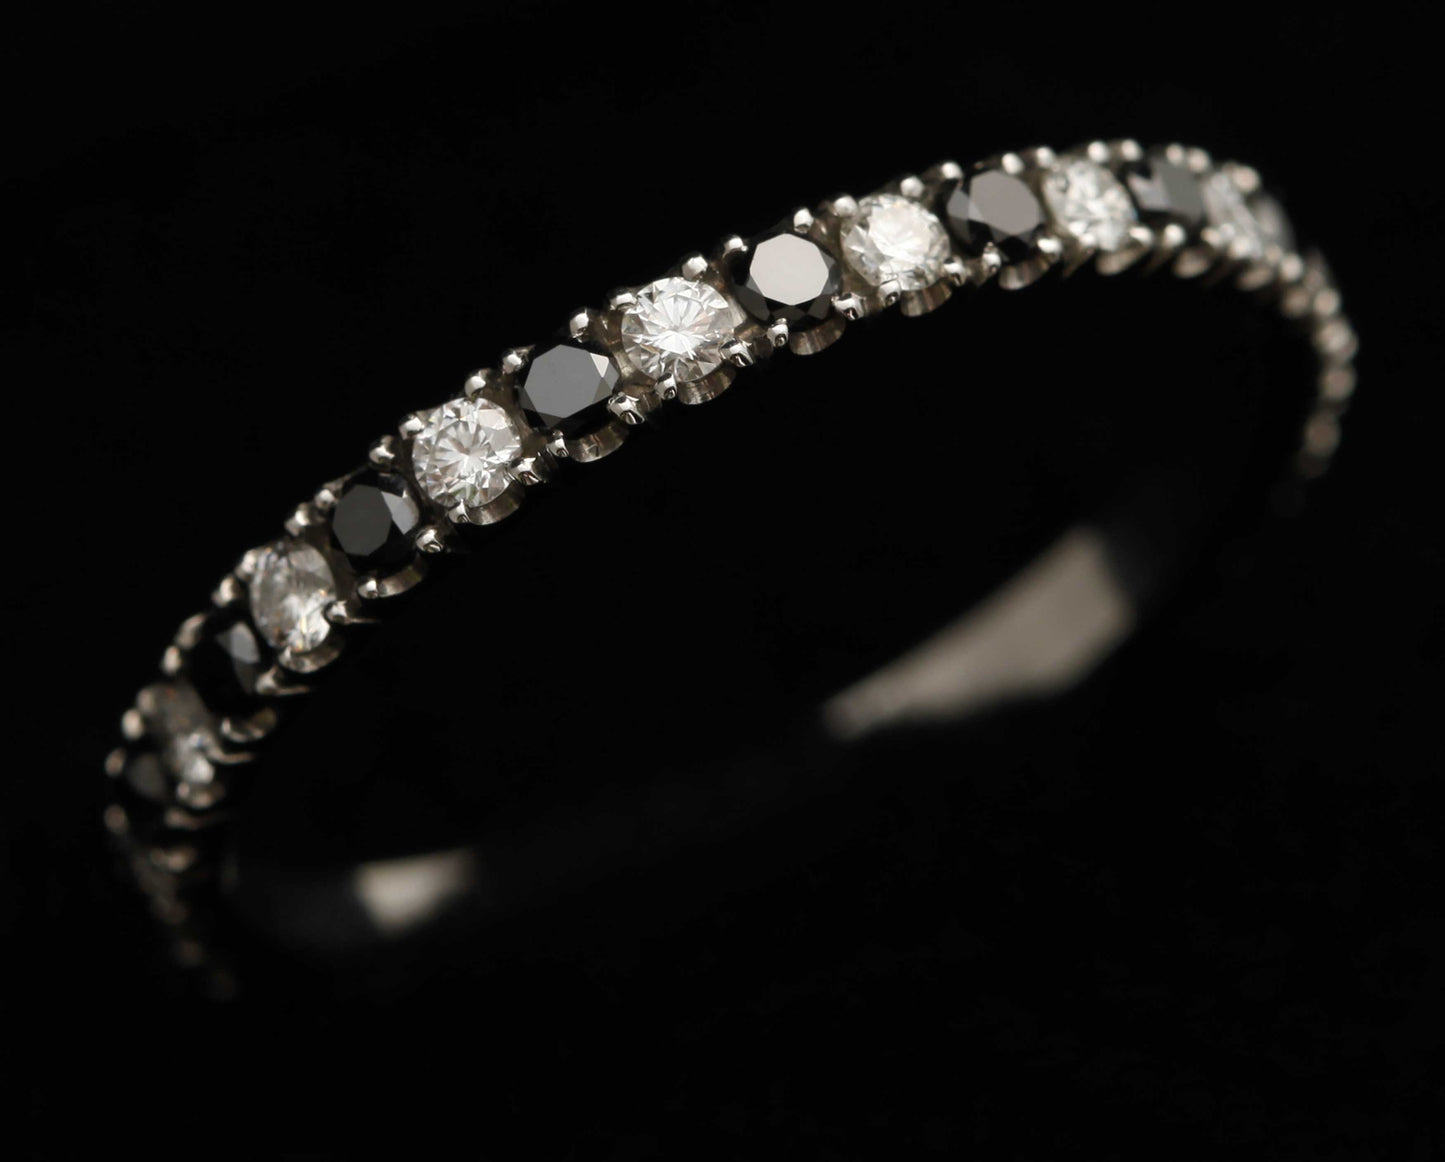 Addon medium acier entièrement serti de diamants et diamants noirs 1.9 mm